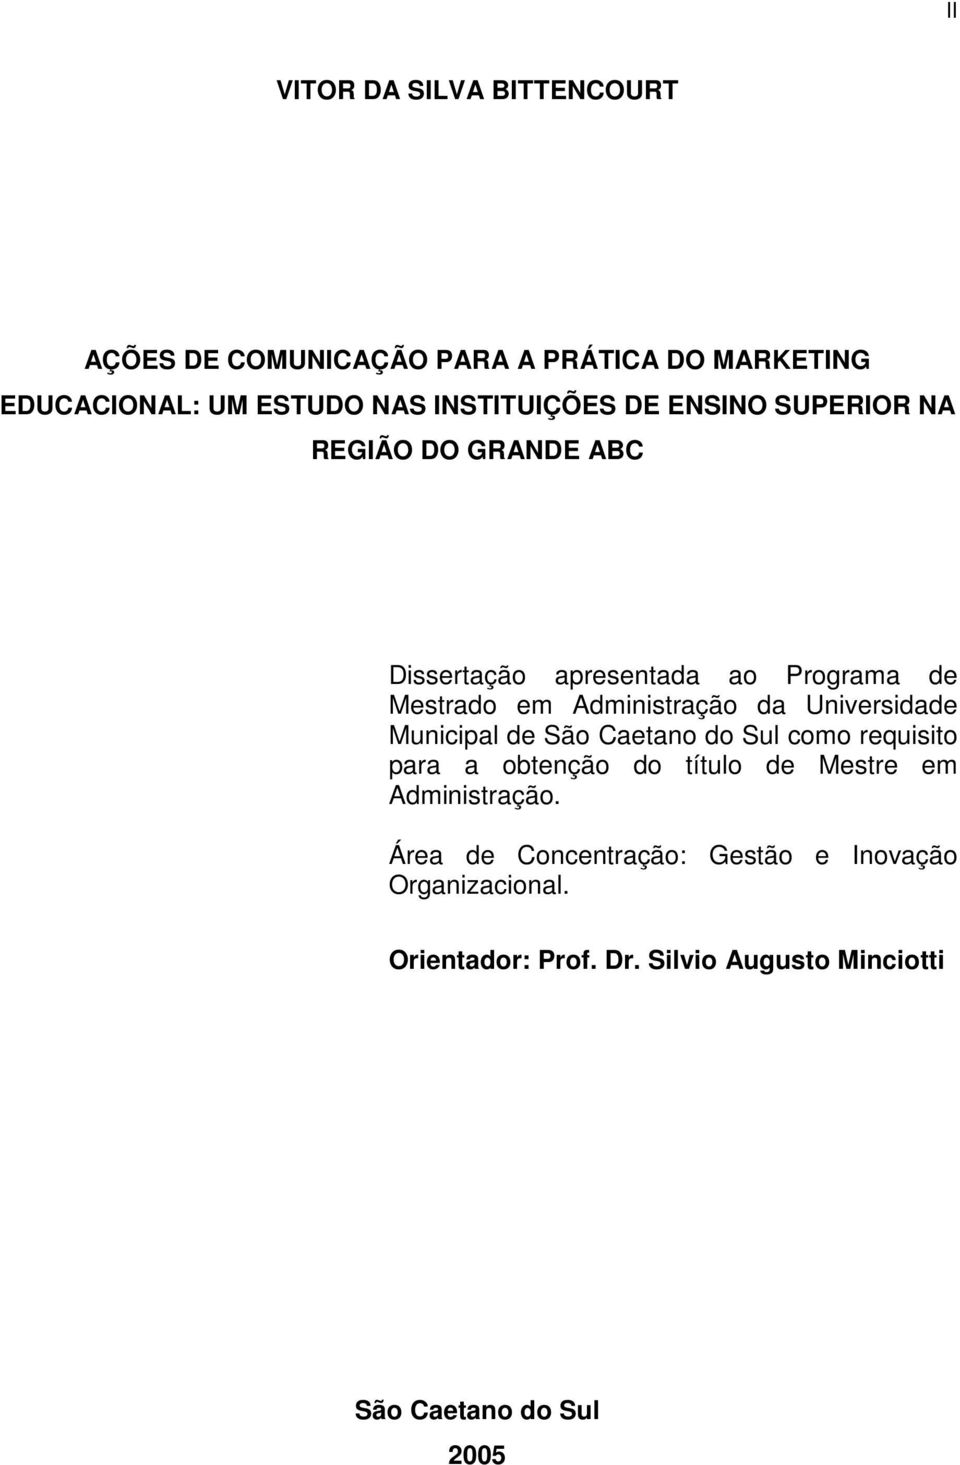 Administração da Universidade Municipal de São Caetano do Sul como requisito para a obtenção do título de Mestre em